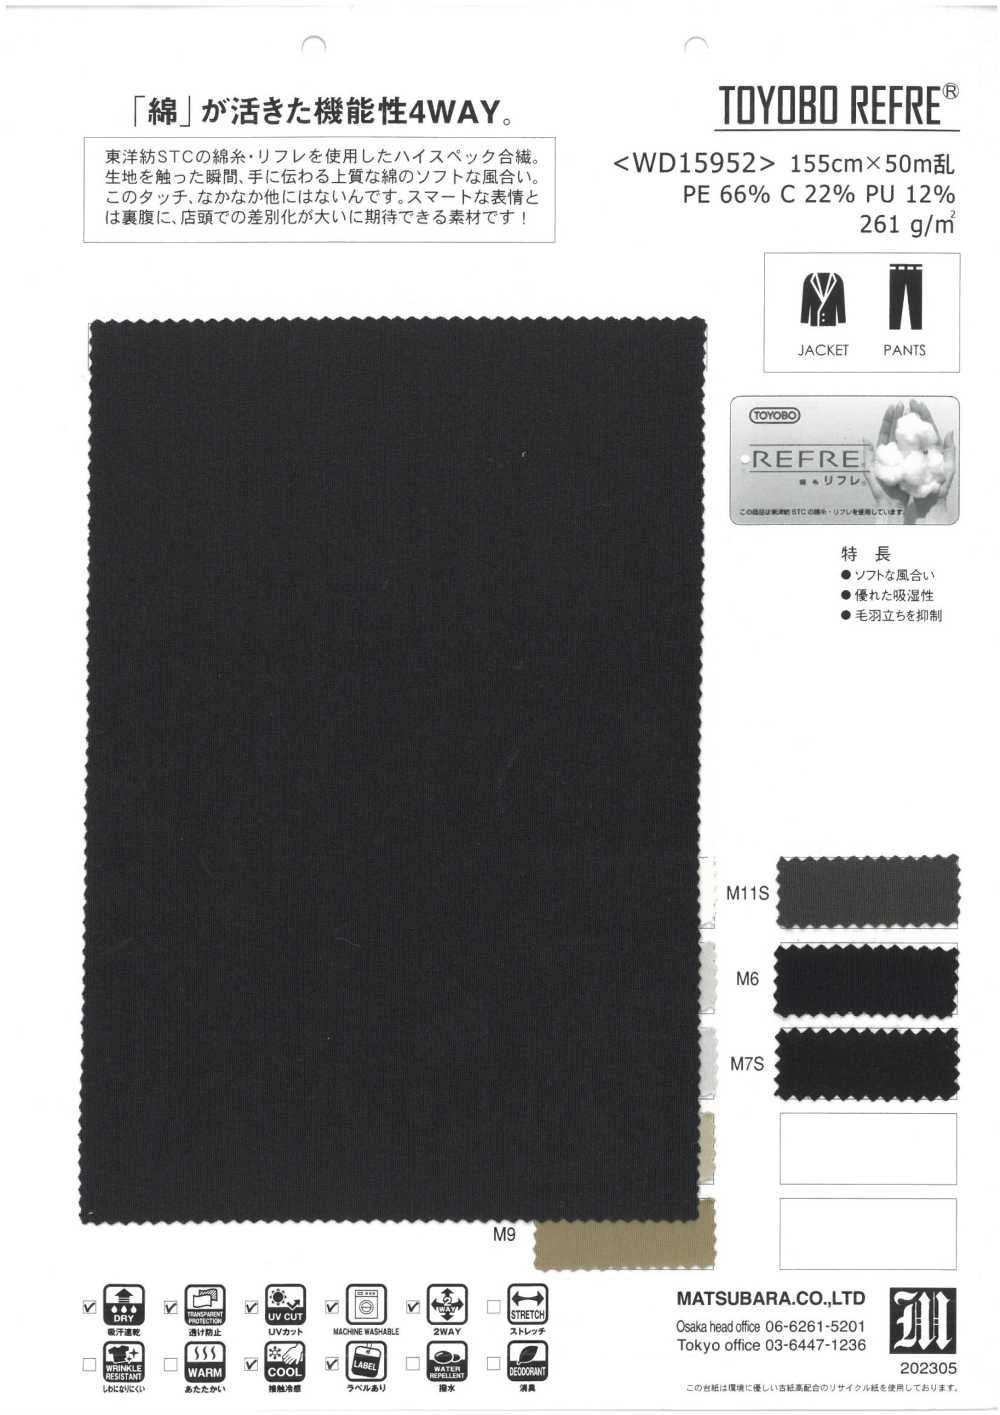 WD15952 TOYOBO REFRE®[Fabrica Textil] Matsubara